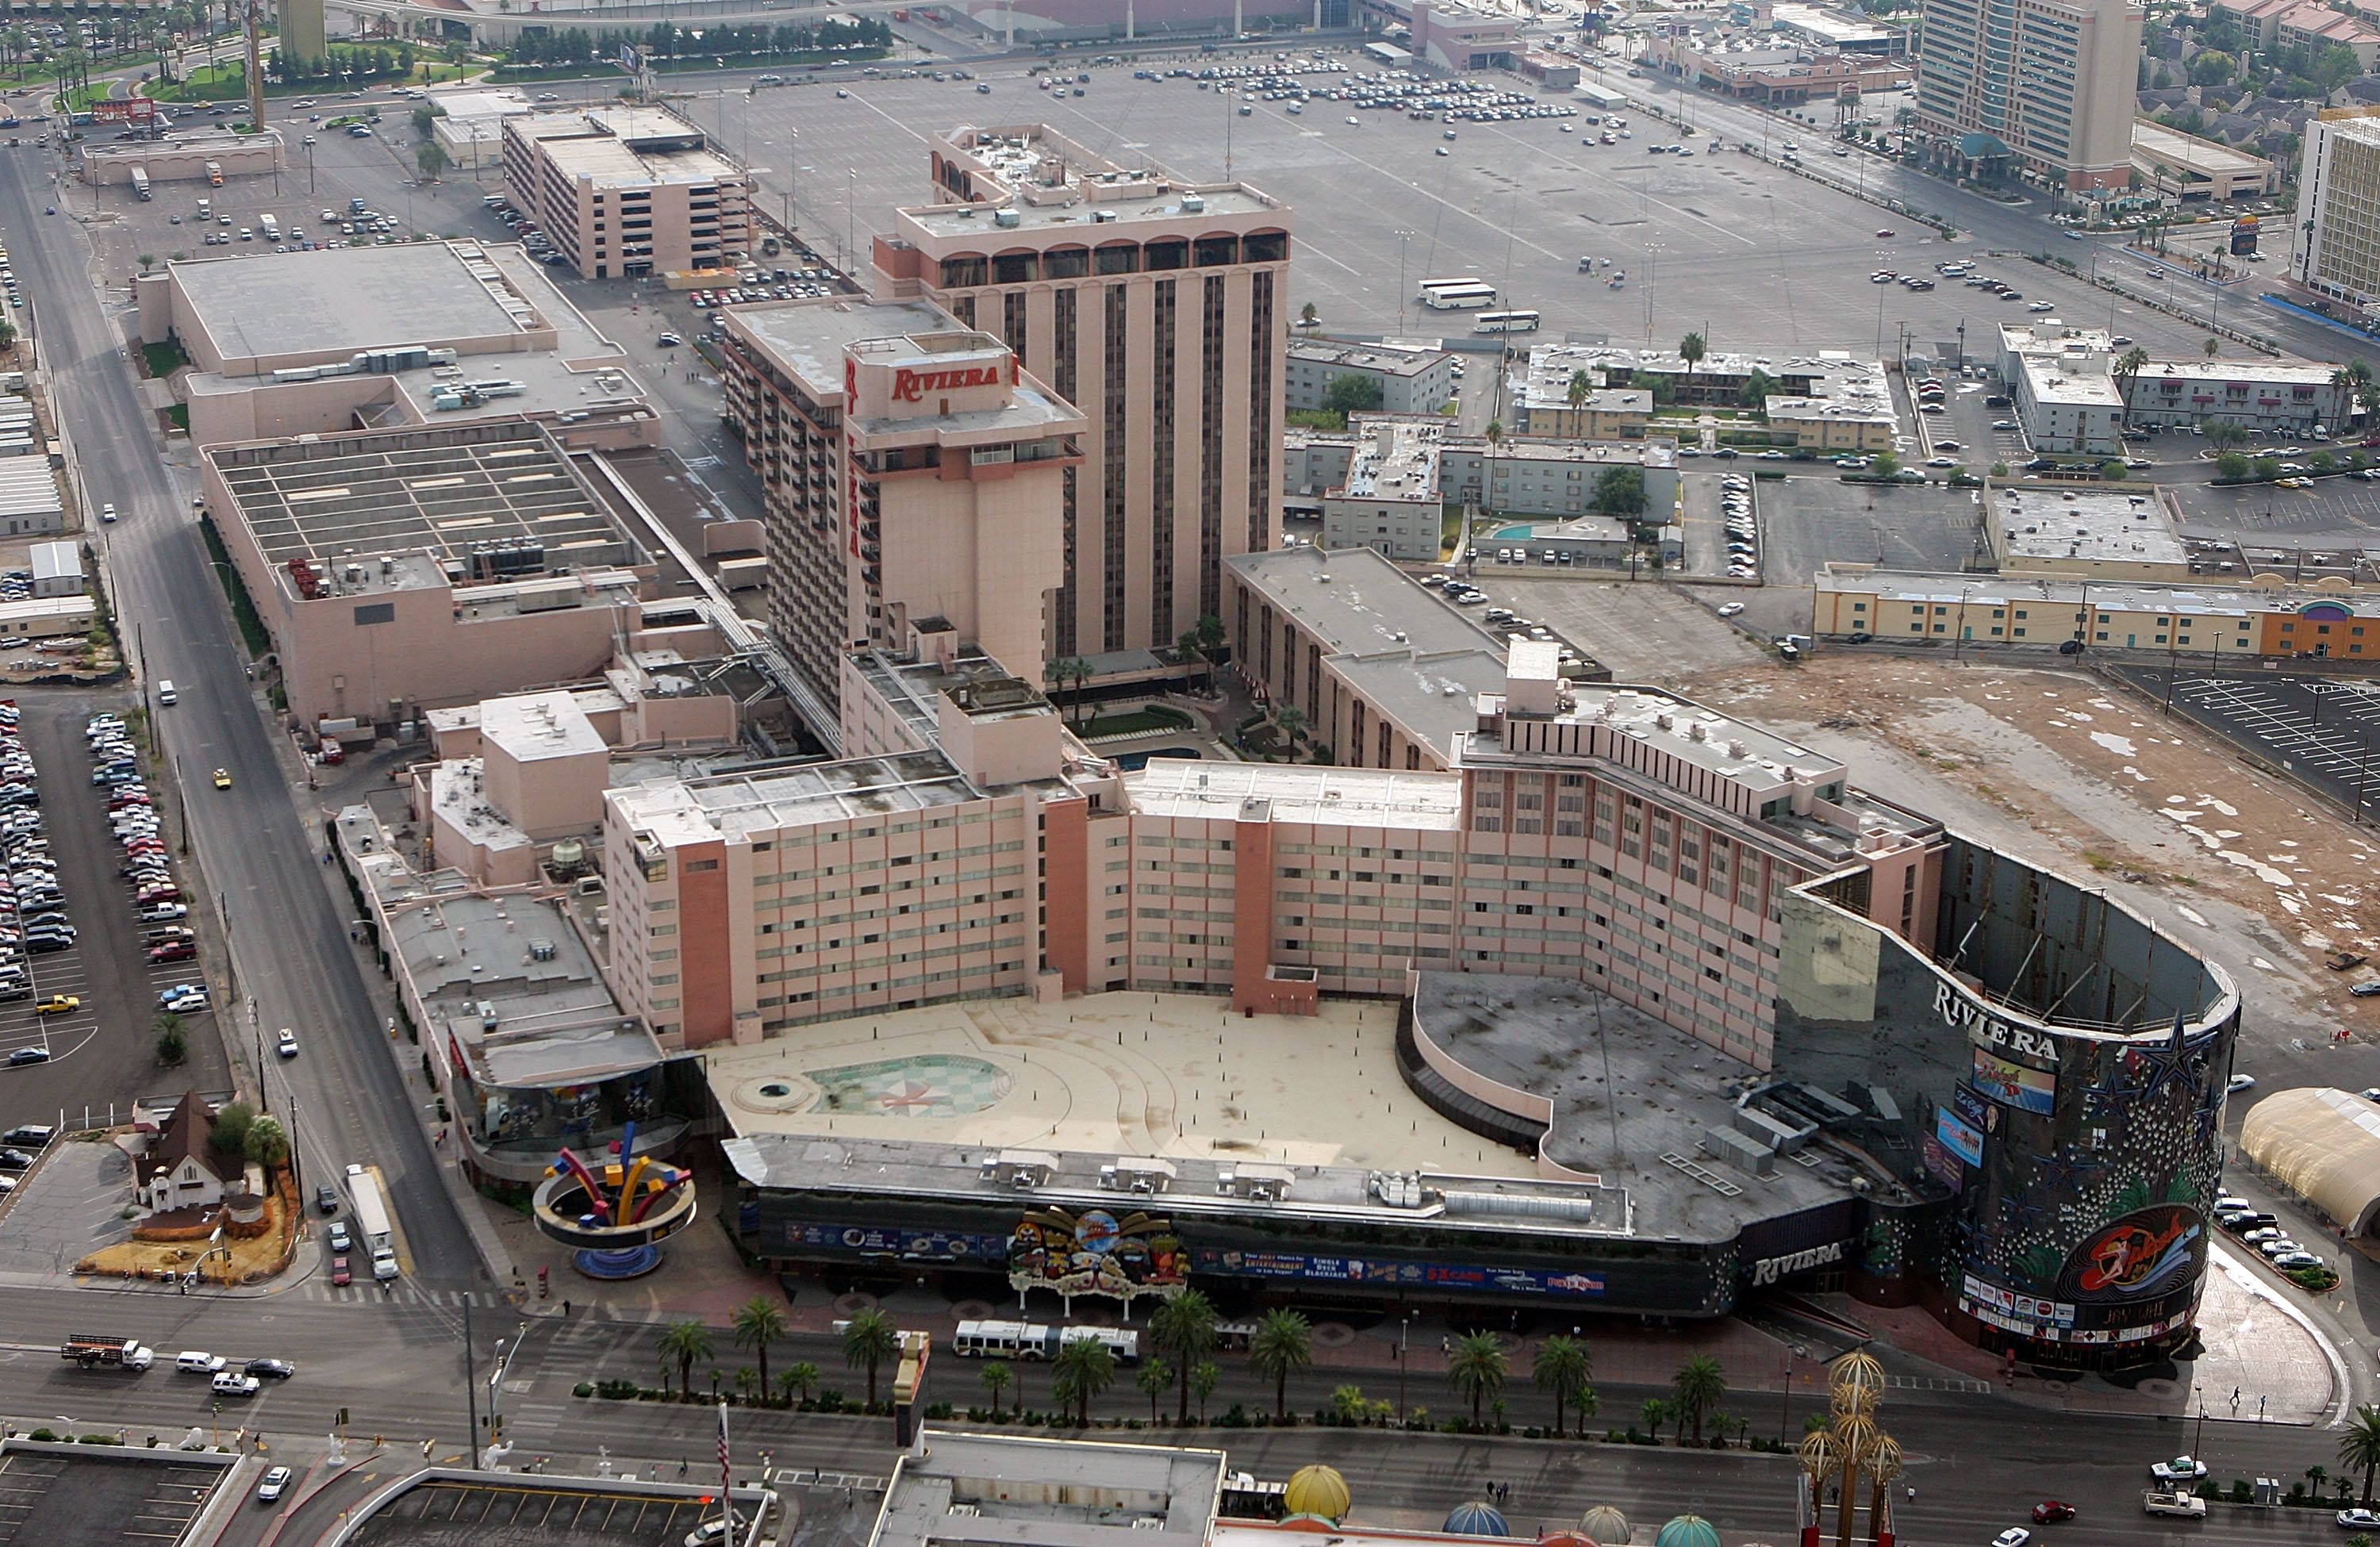 Riviera Las Vegas Casino History! 1955-2015 